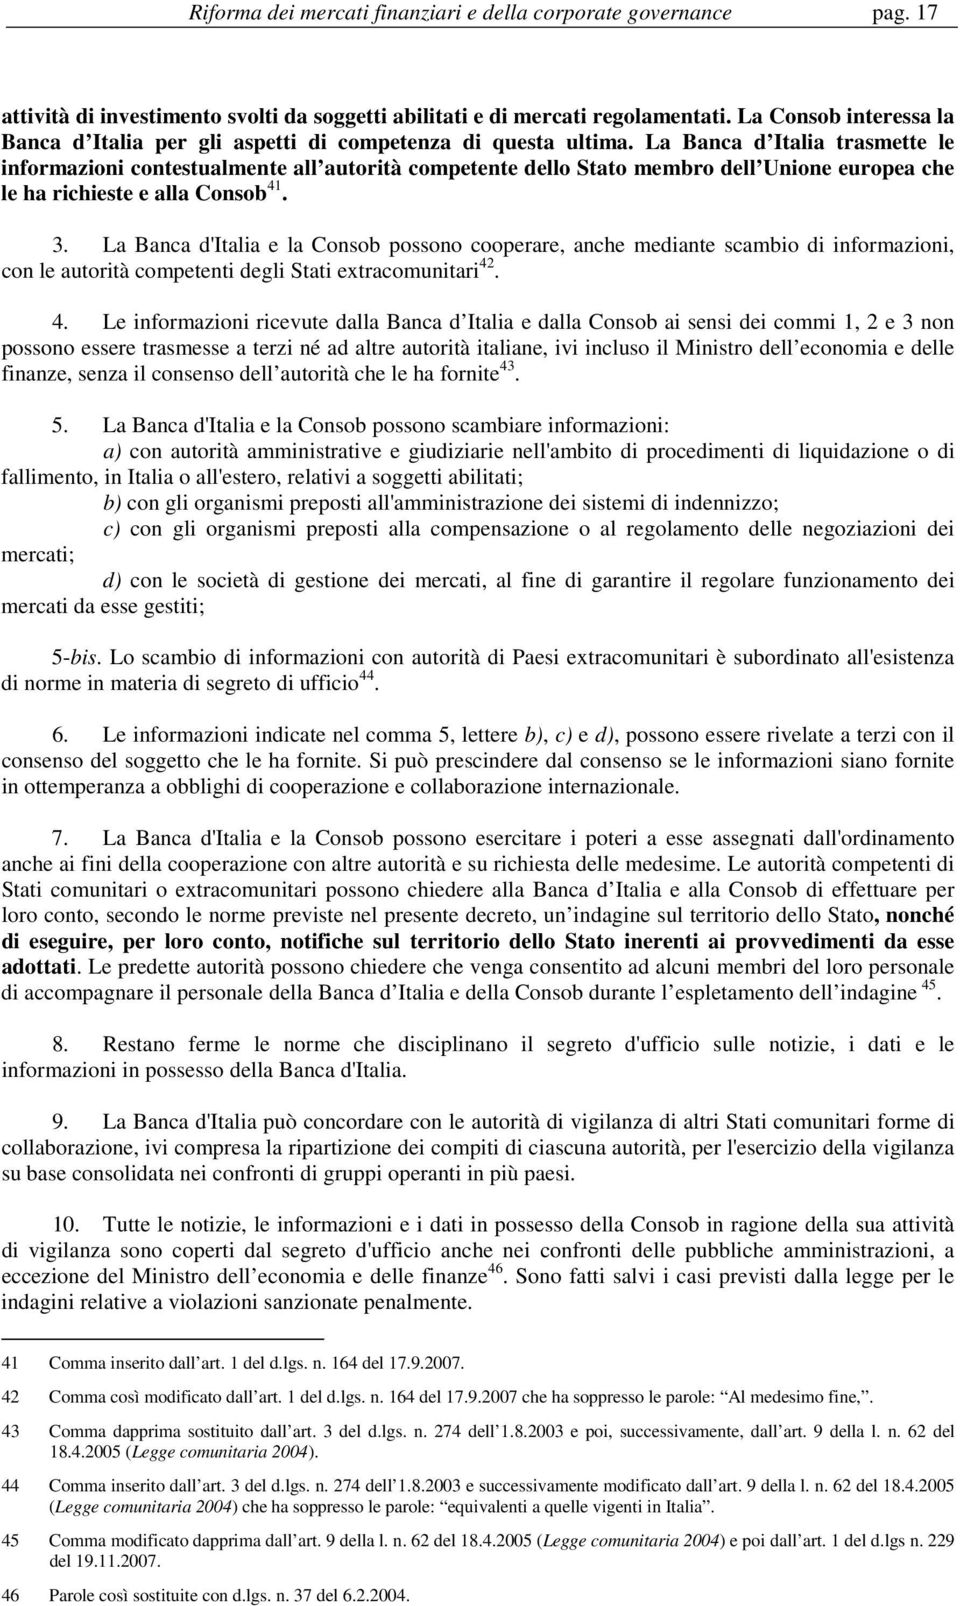 La Banca d Italia trasmette le informazioni contestualmente all autorità competente dello Stato membro dell Unione europea che le ha richieste e alla Consob 41. 3.